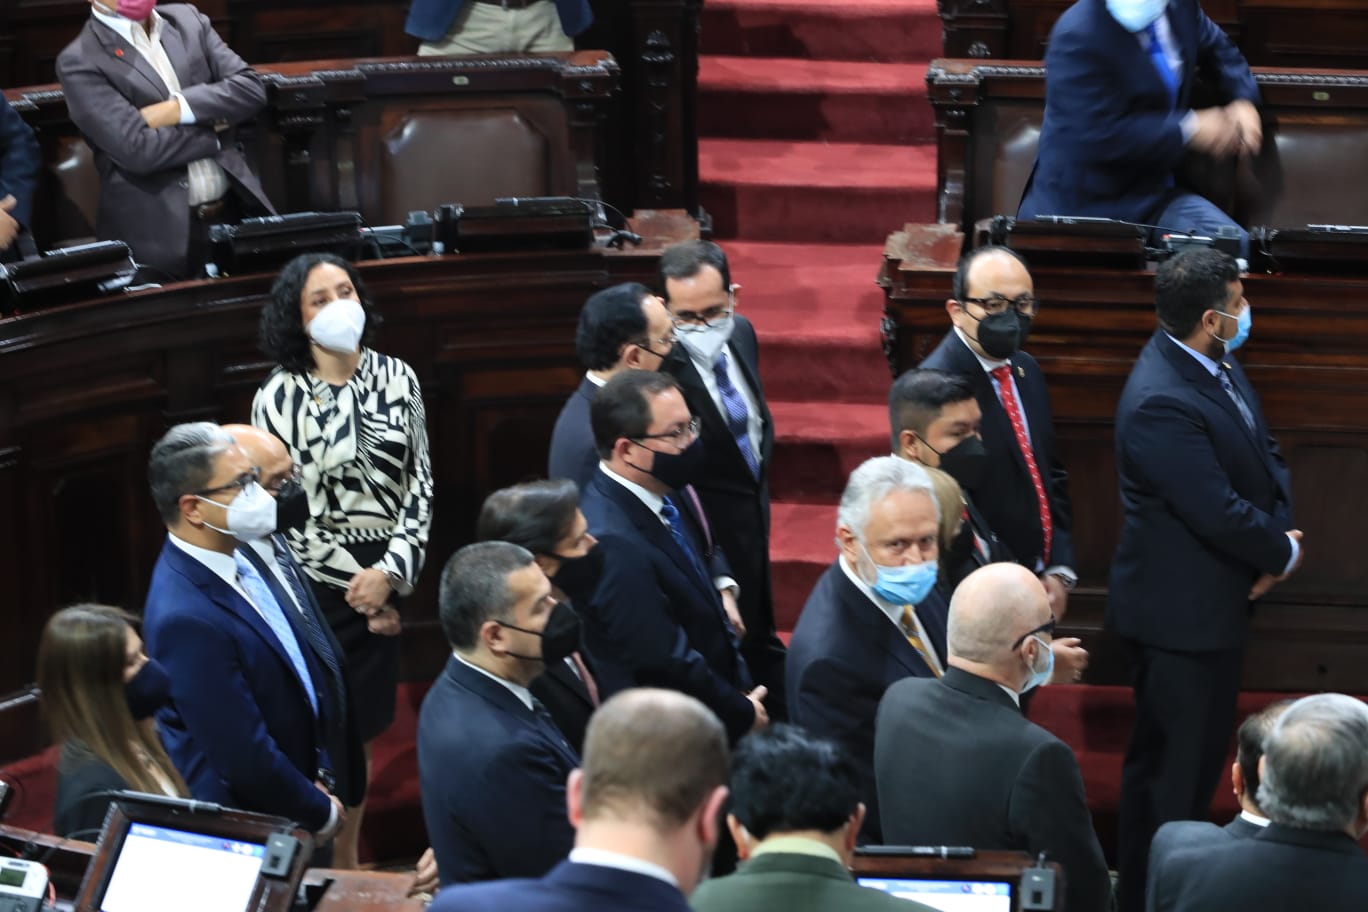 Los integrantes de la Comisión de Postulación para la elección de fiscal general fueron juramentados en el Congreso. (Foto Prensa Libre: Élmer Vargas)